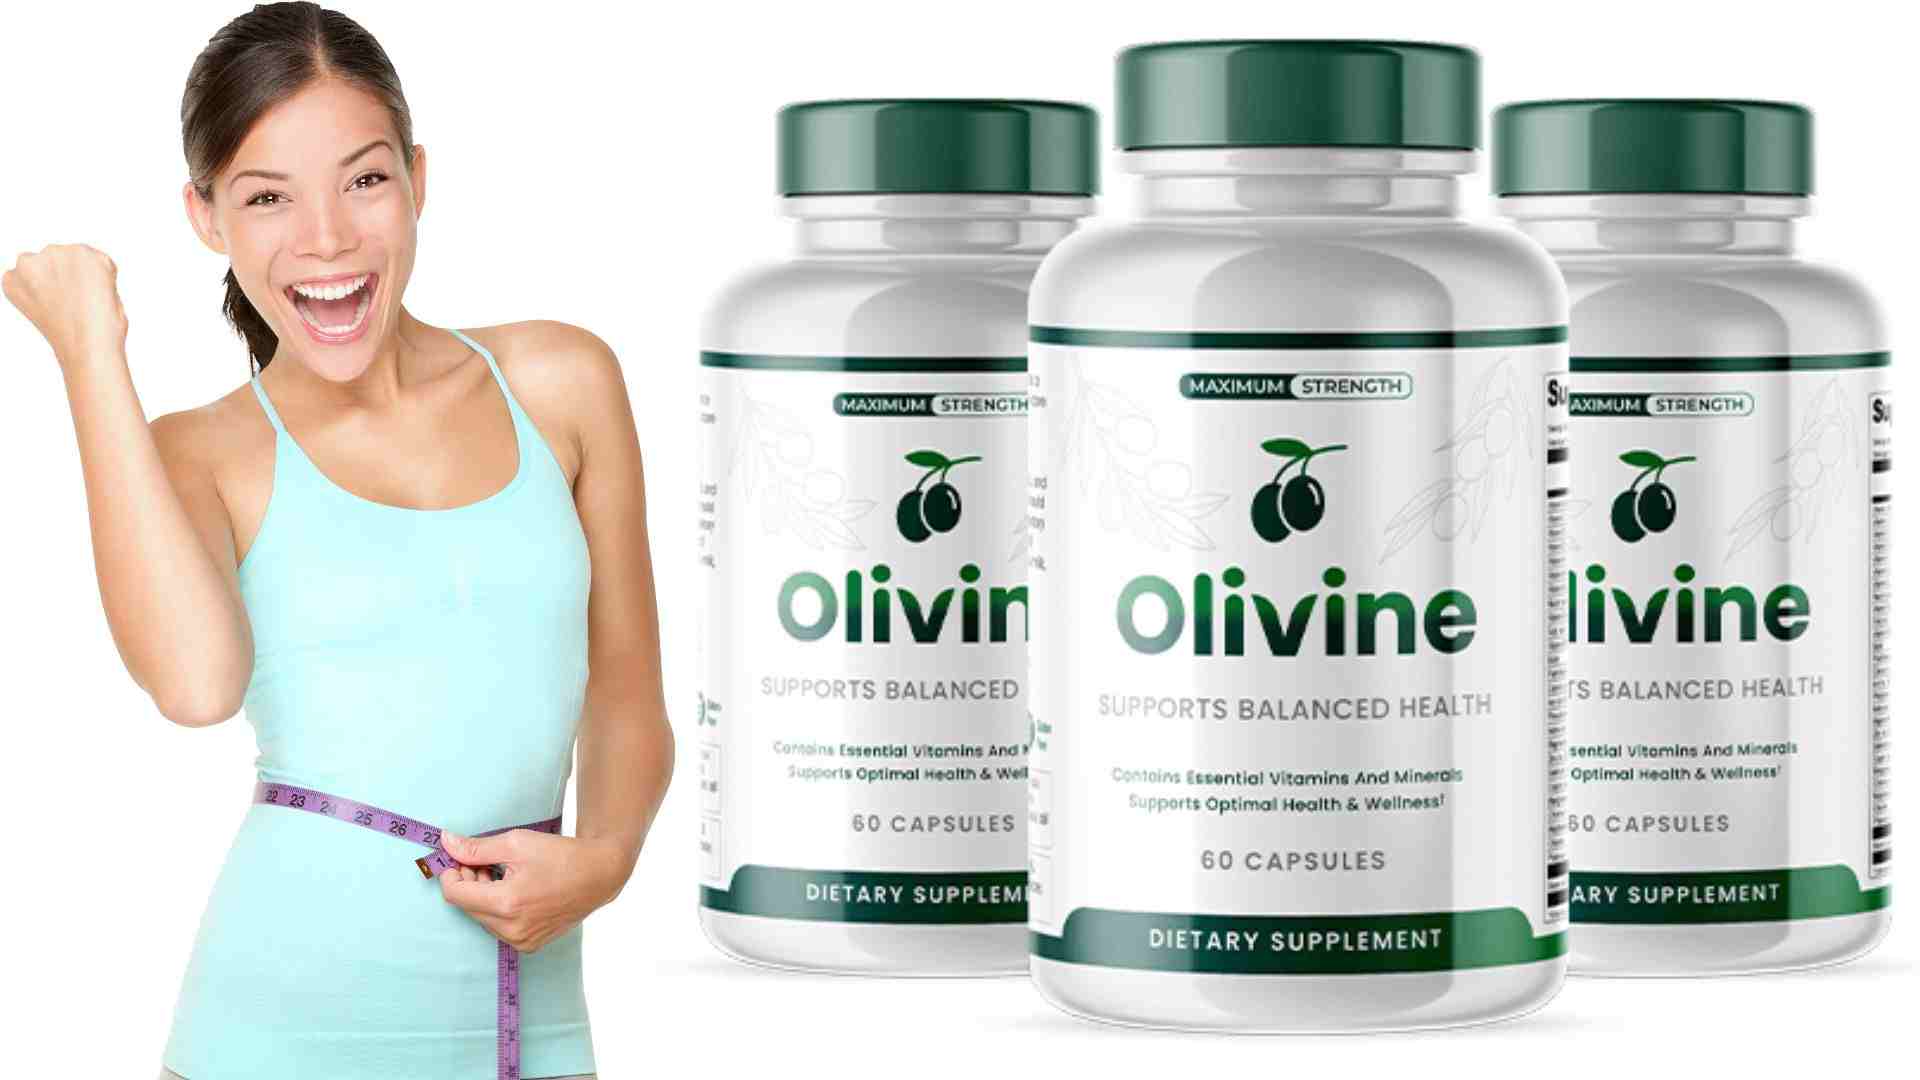 olivine benefits